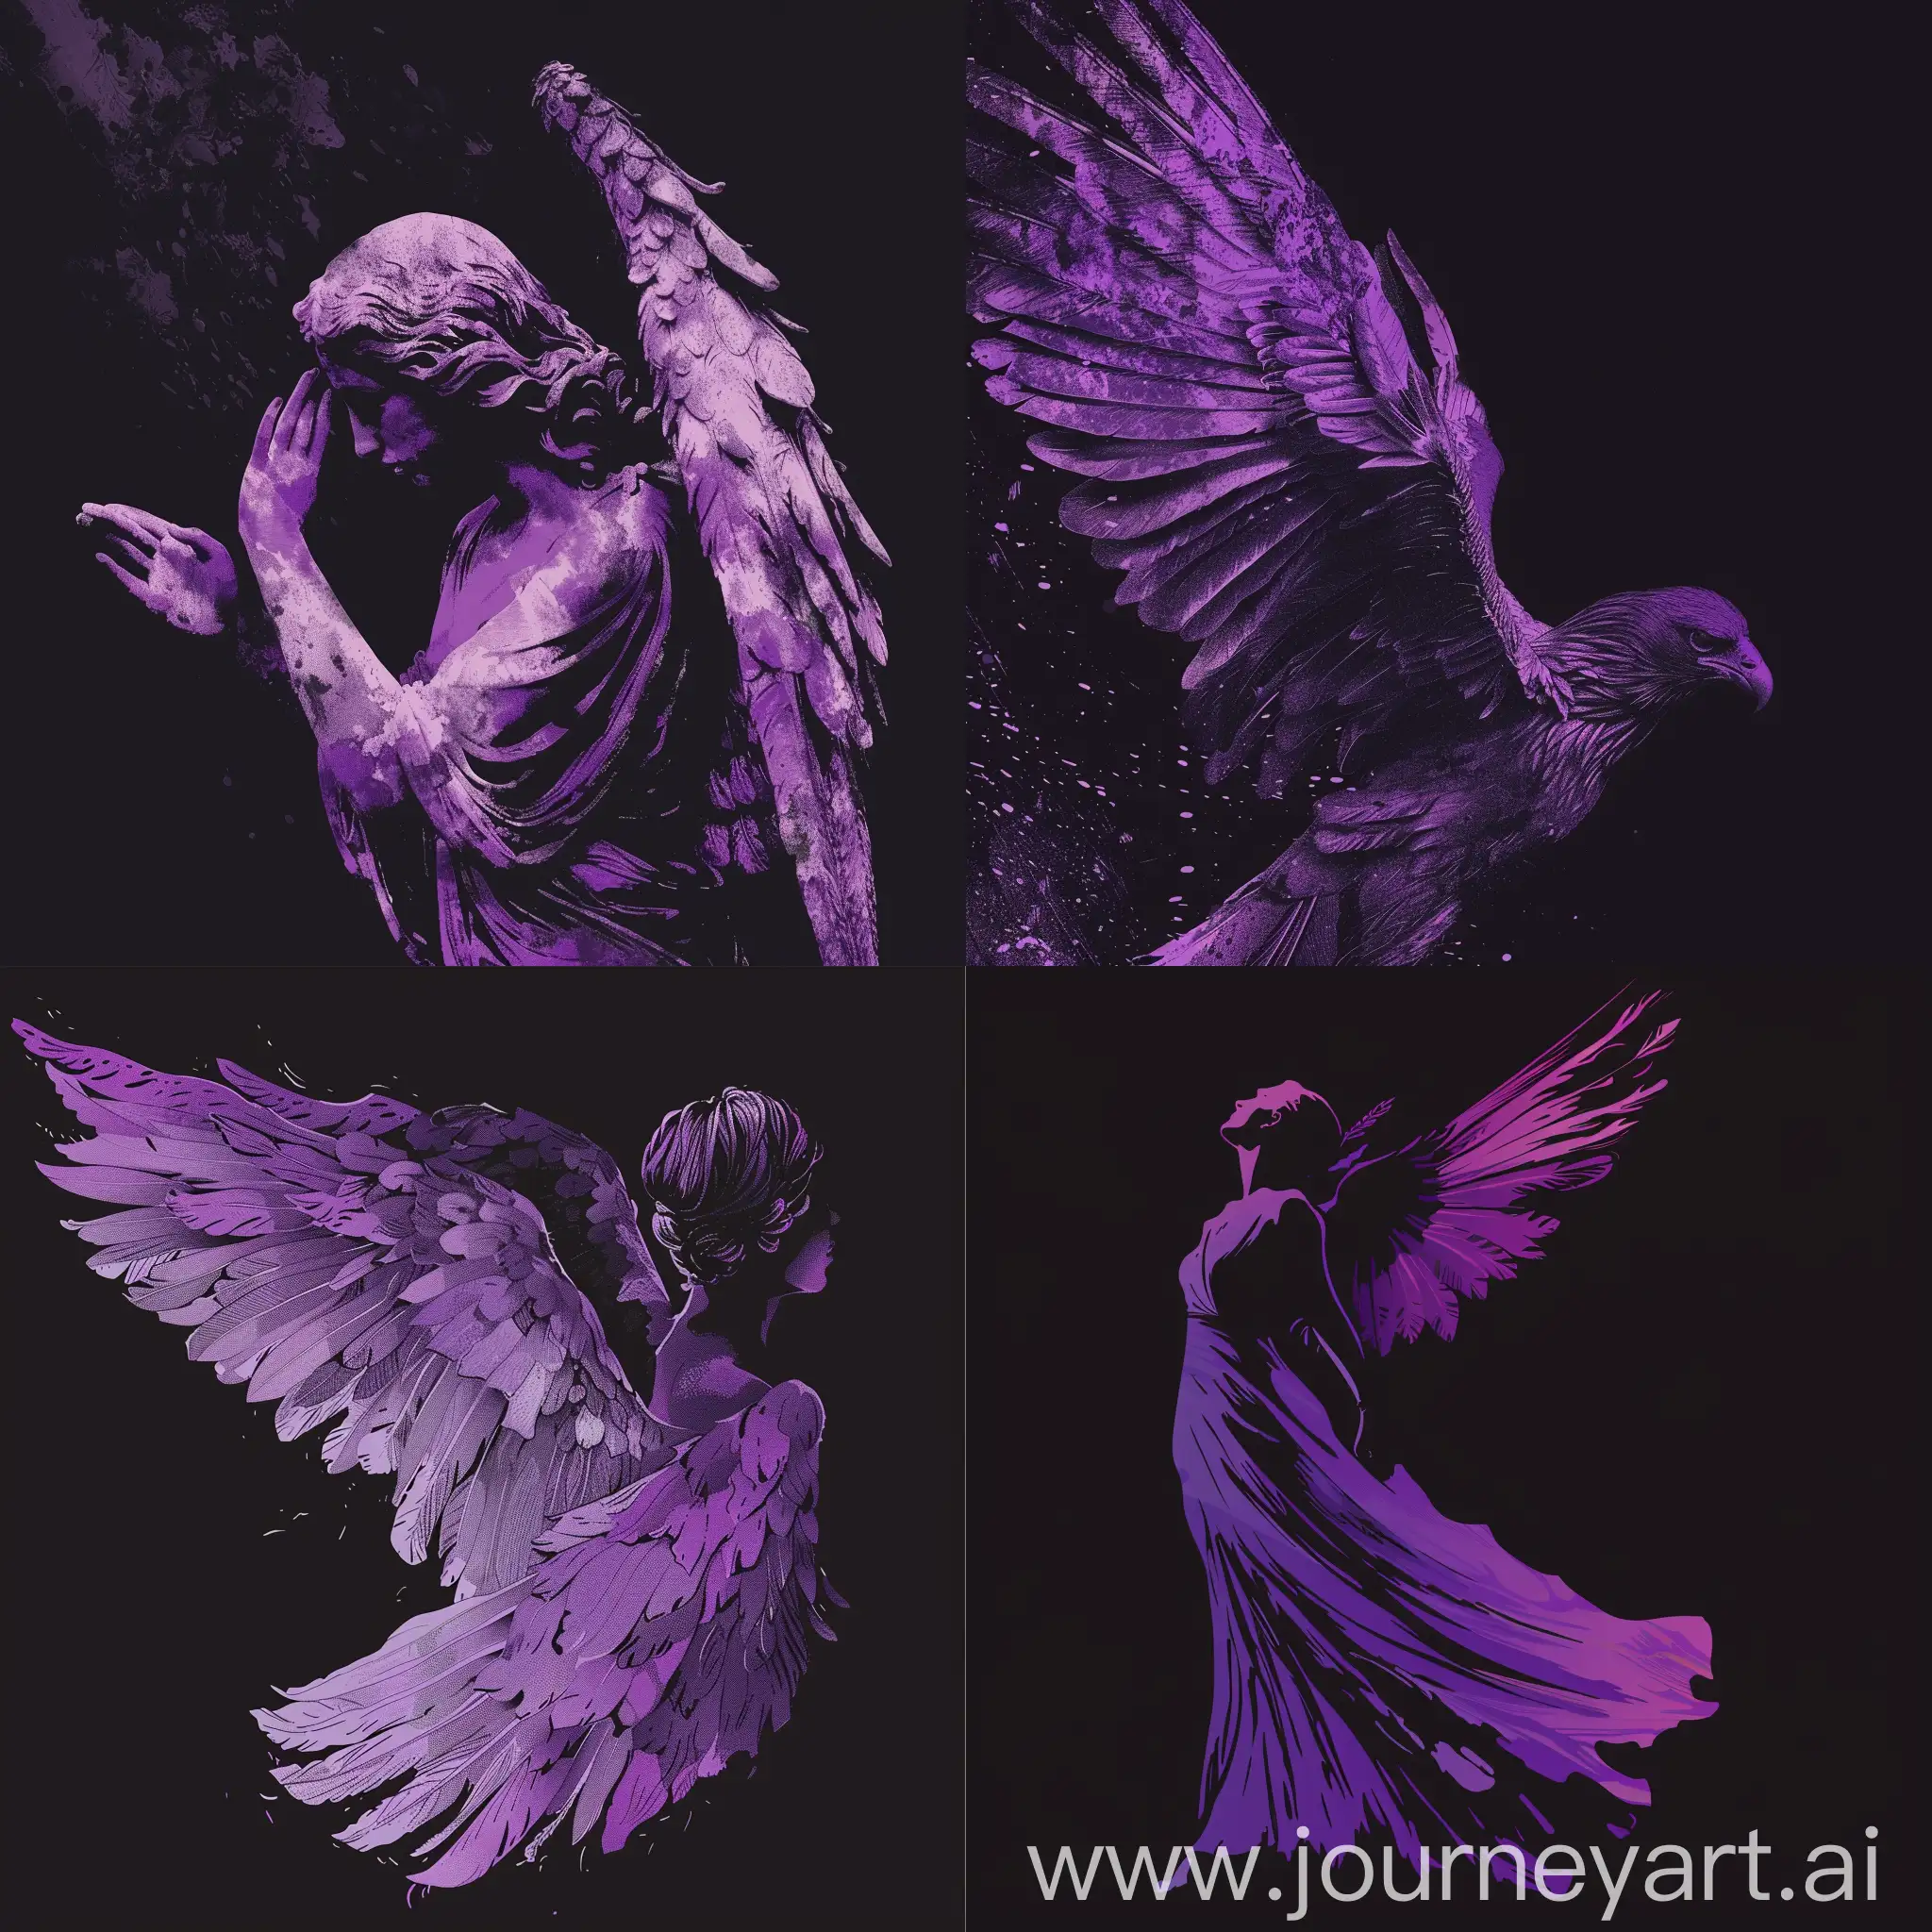 сделай обложку для трека с ангелом в фиолетовых оттенках на черном форме